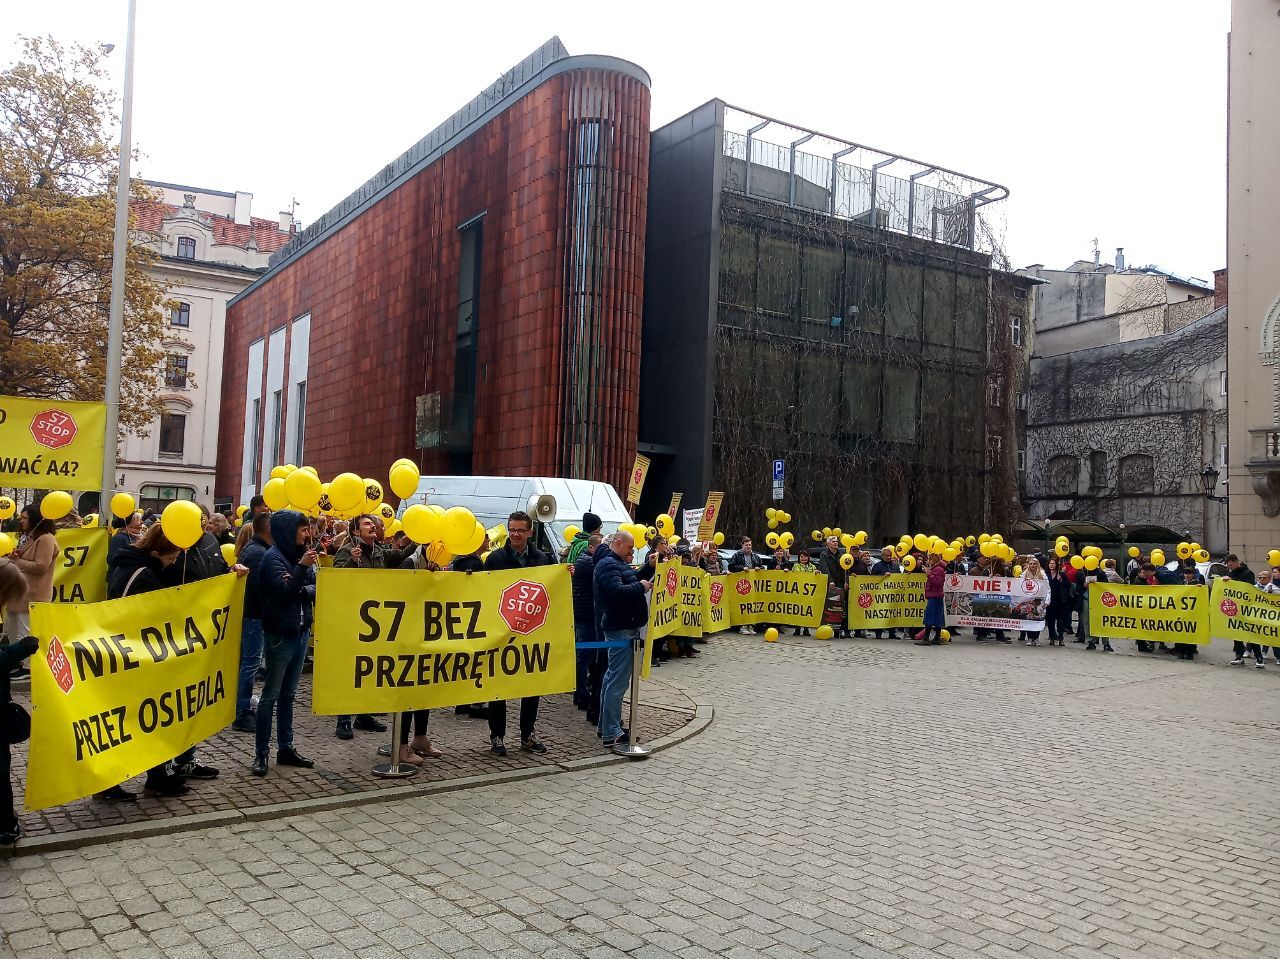 Під Радою міста Краків відбувається протест проти будови дороги [ФОТО] photo5424979995262040706